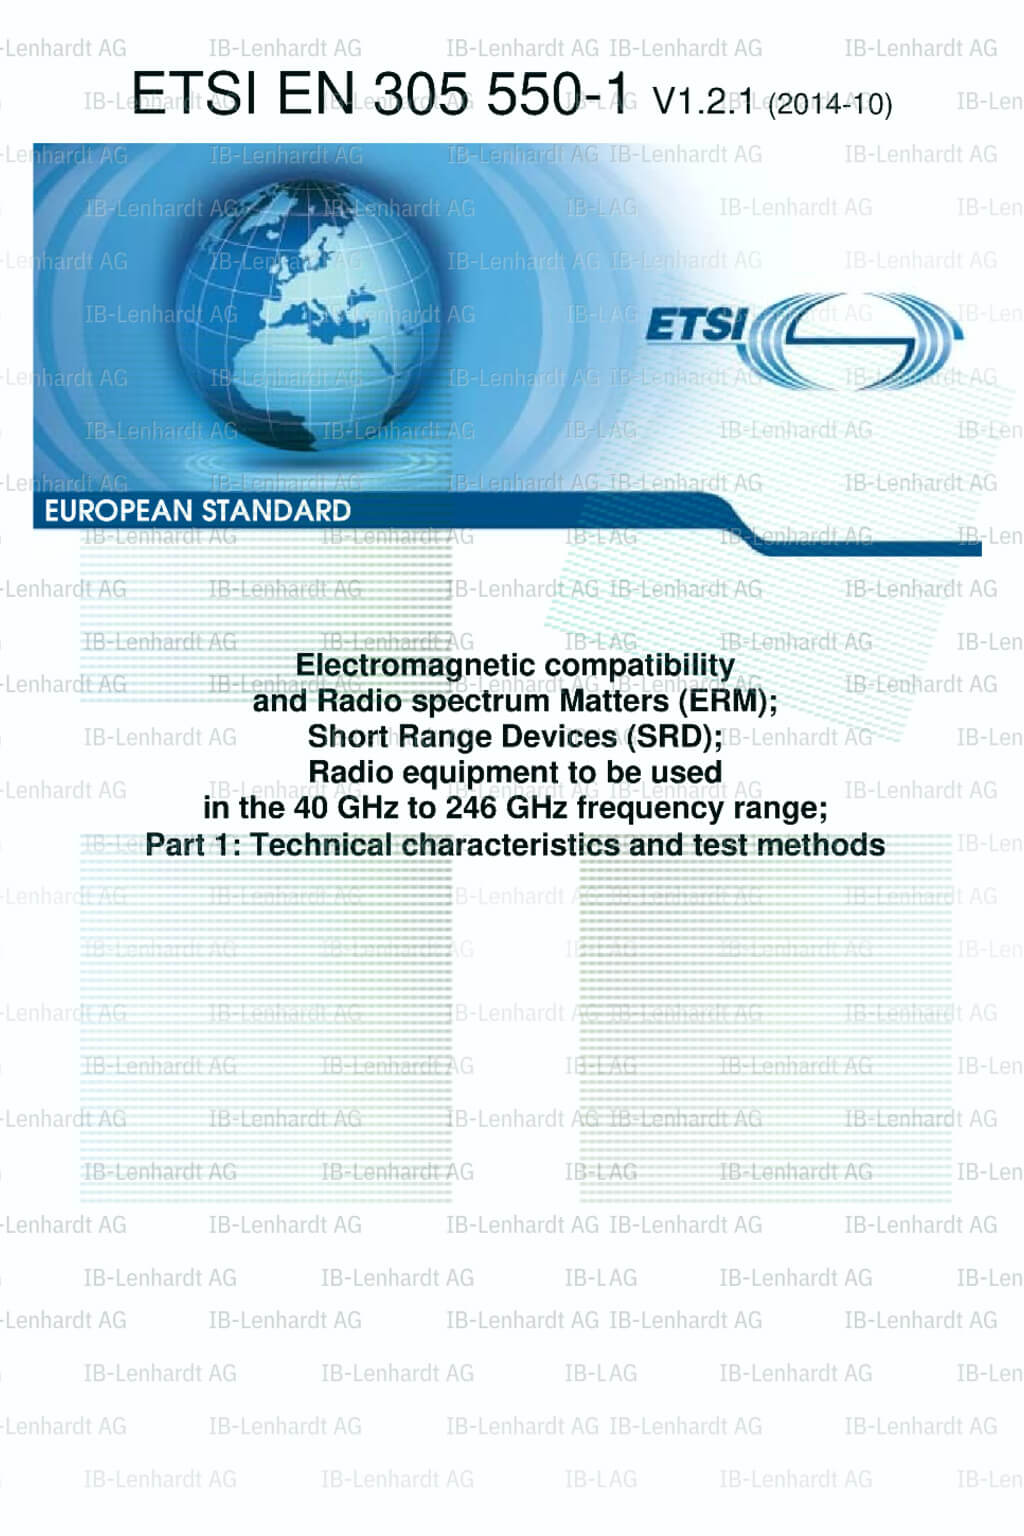 ETSI EN 305 550-1 V1.2.1